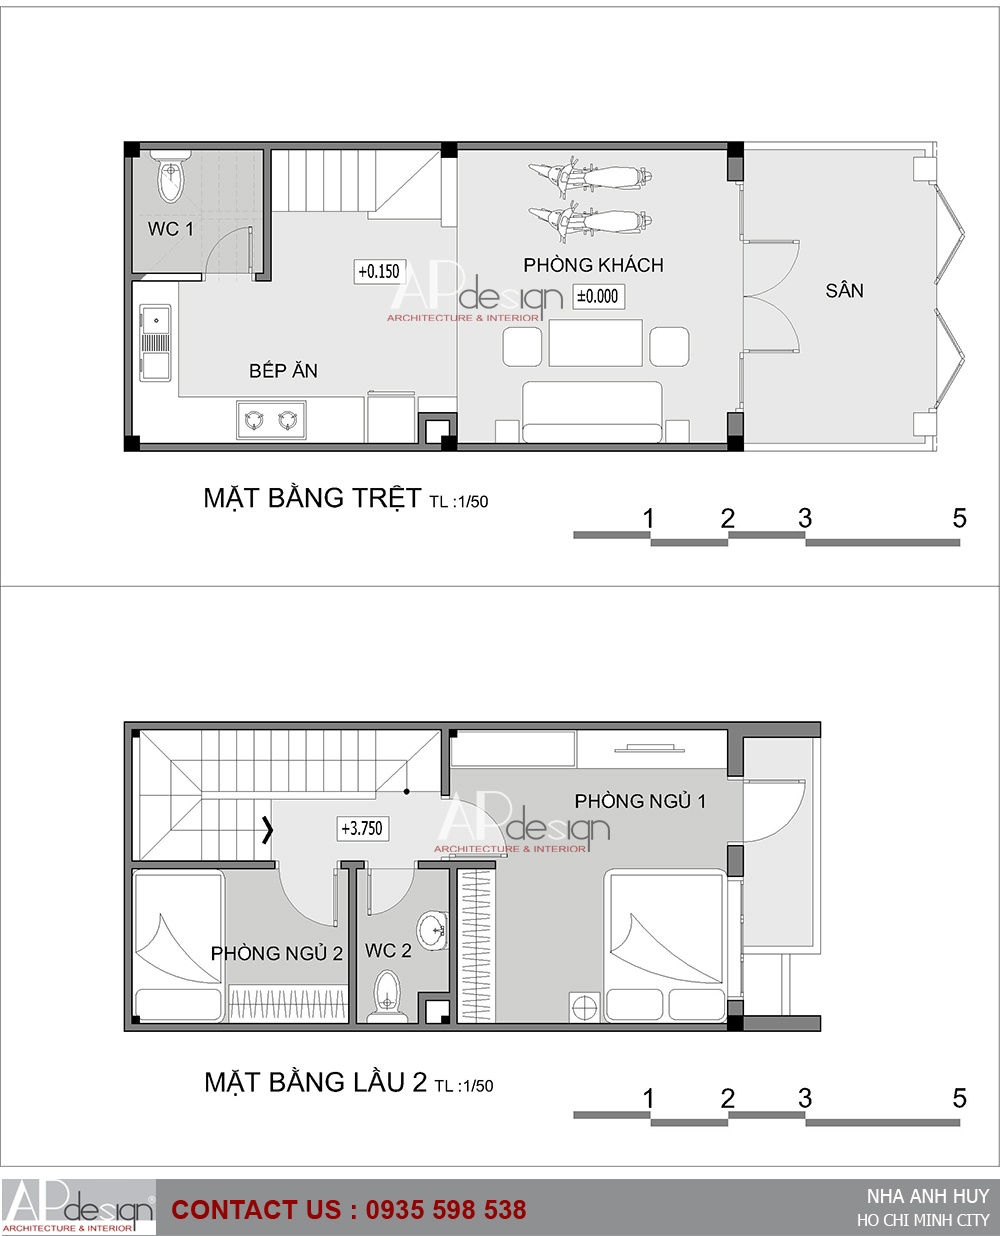 Thiết kế nhà phố 4x9m - Quận Tân Bình - Kiến trúc APdesign